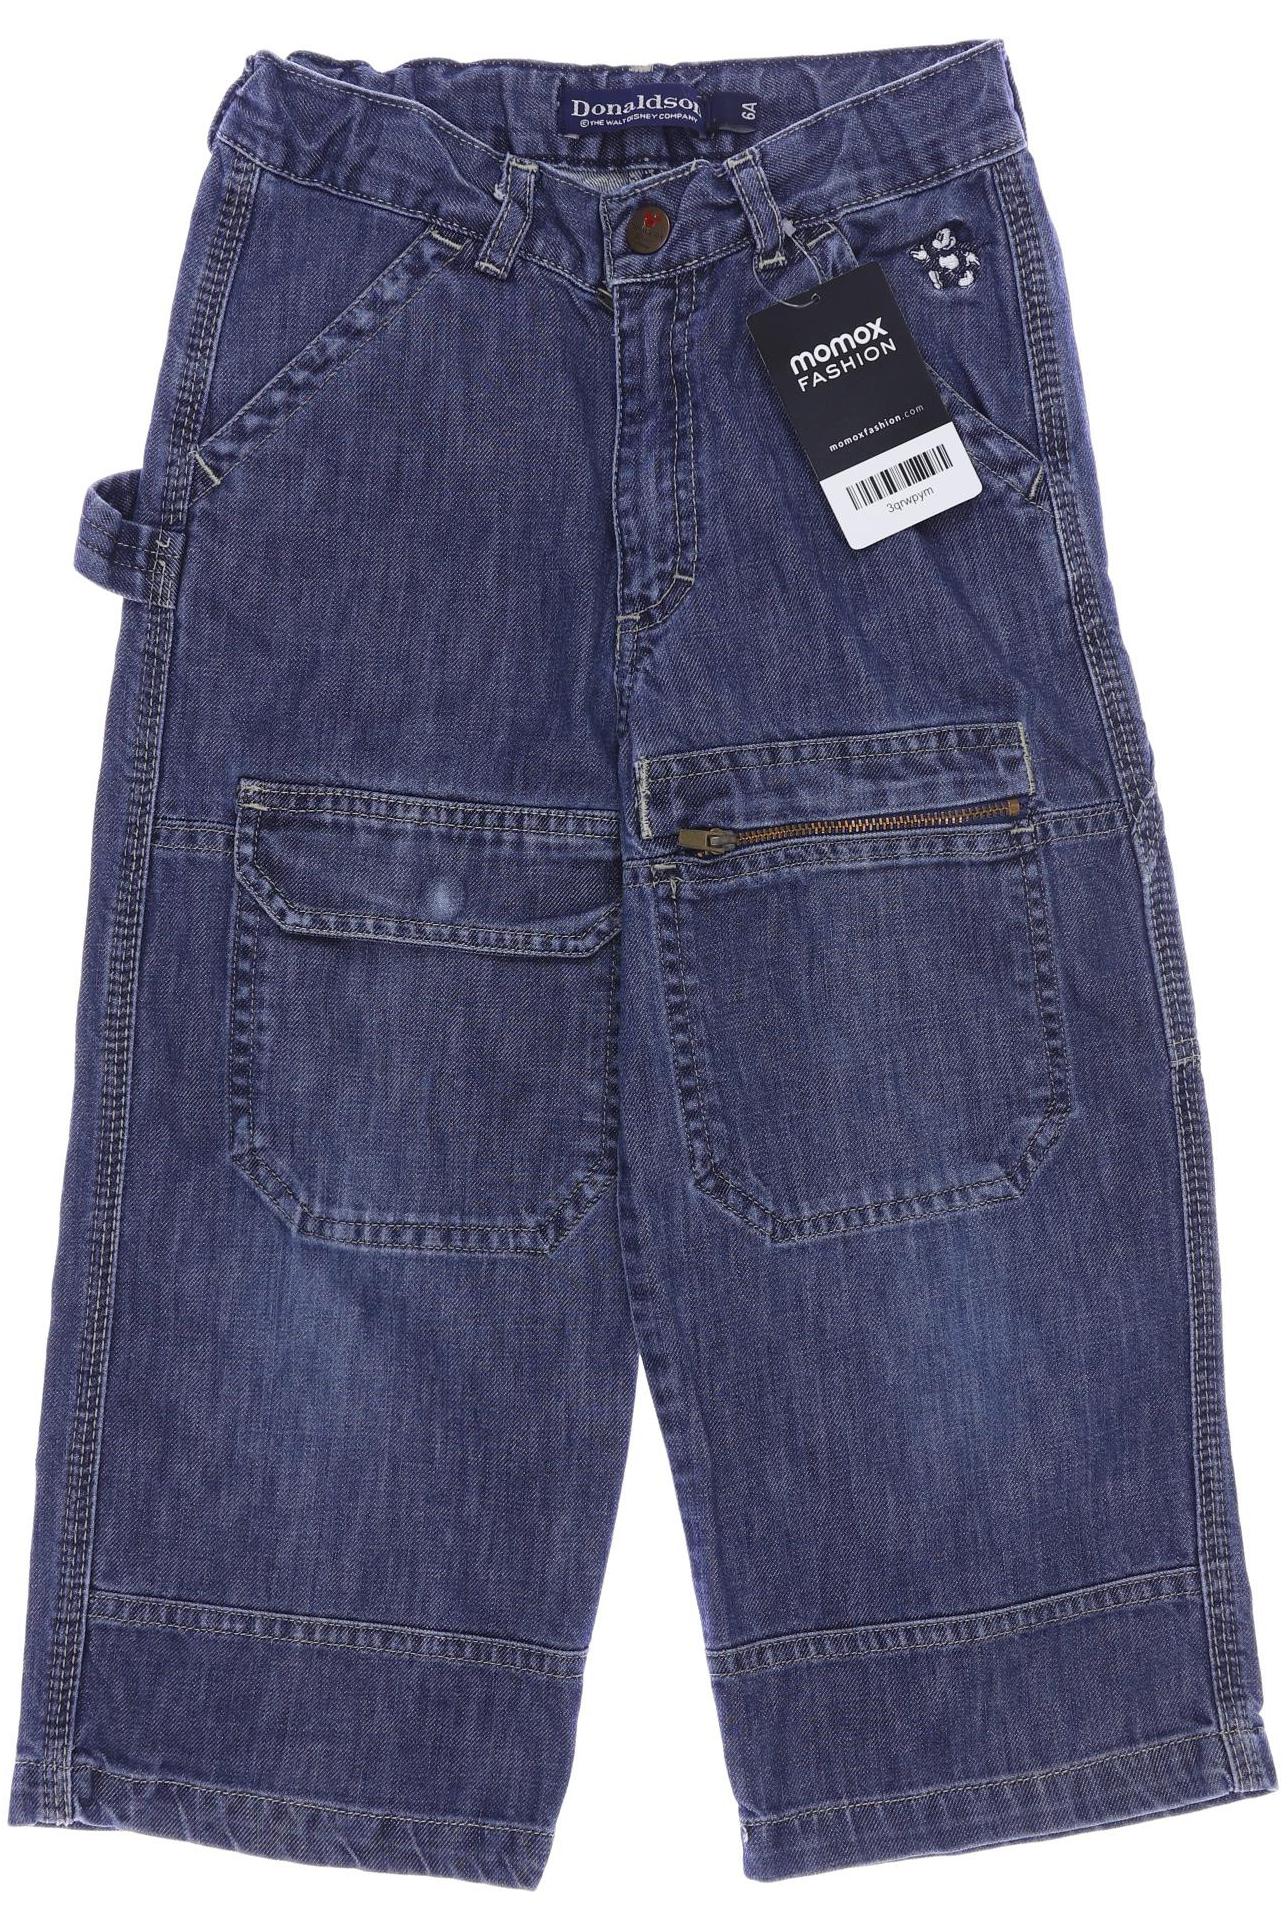 Donaldson Jungen Jeans, blau von Donaldson